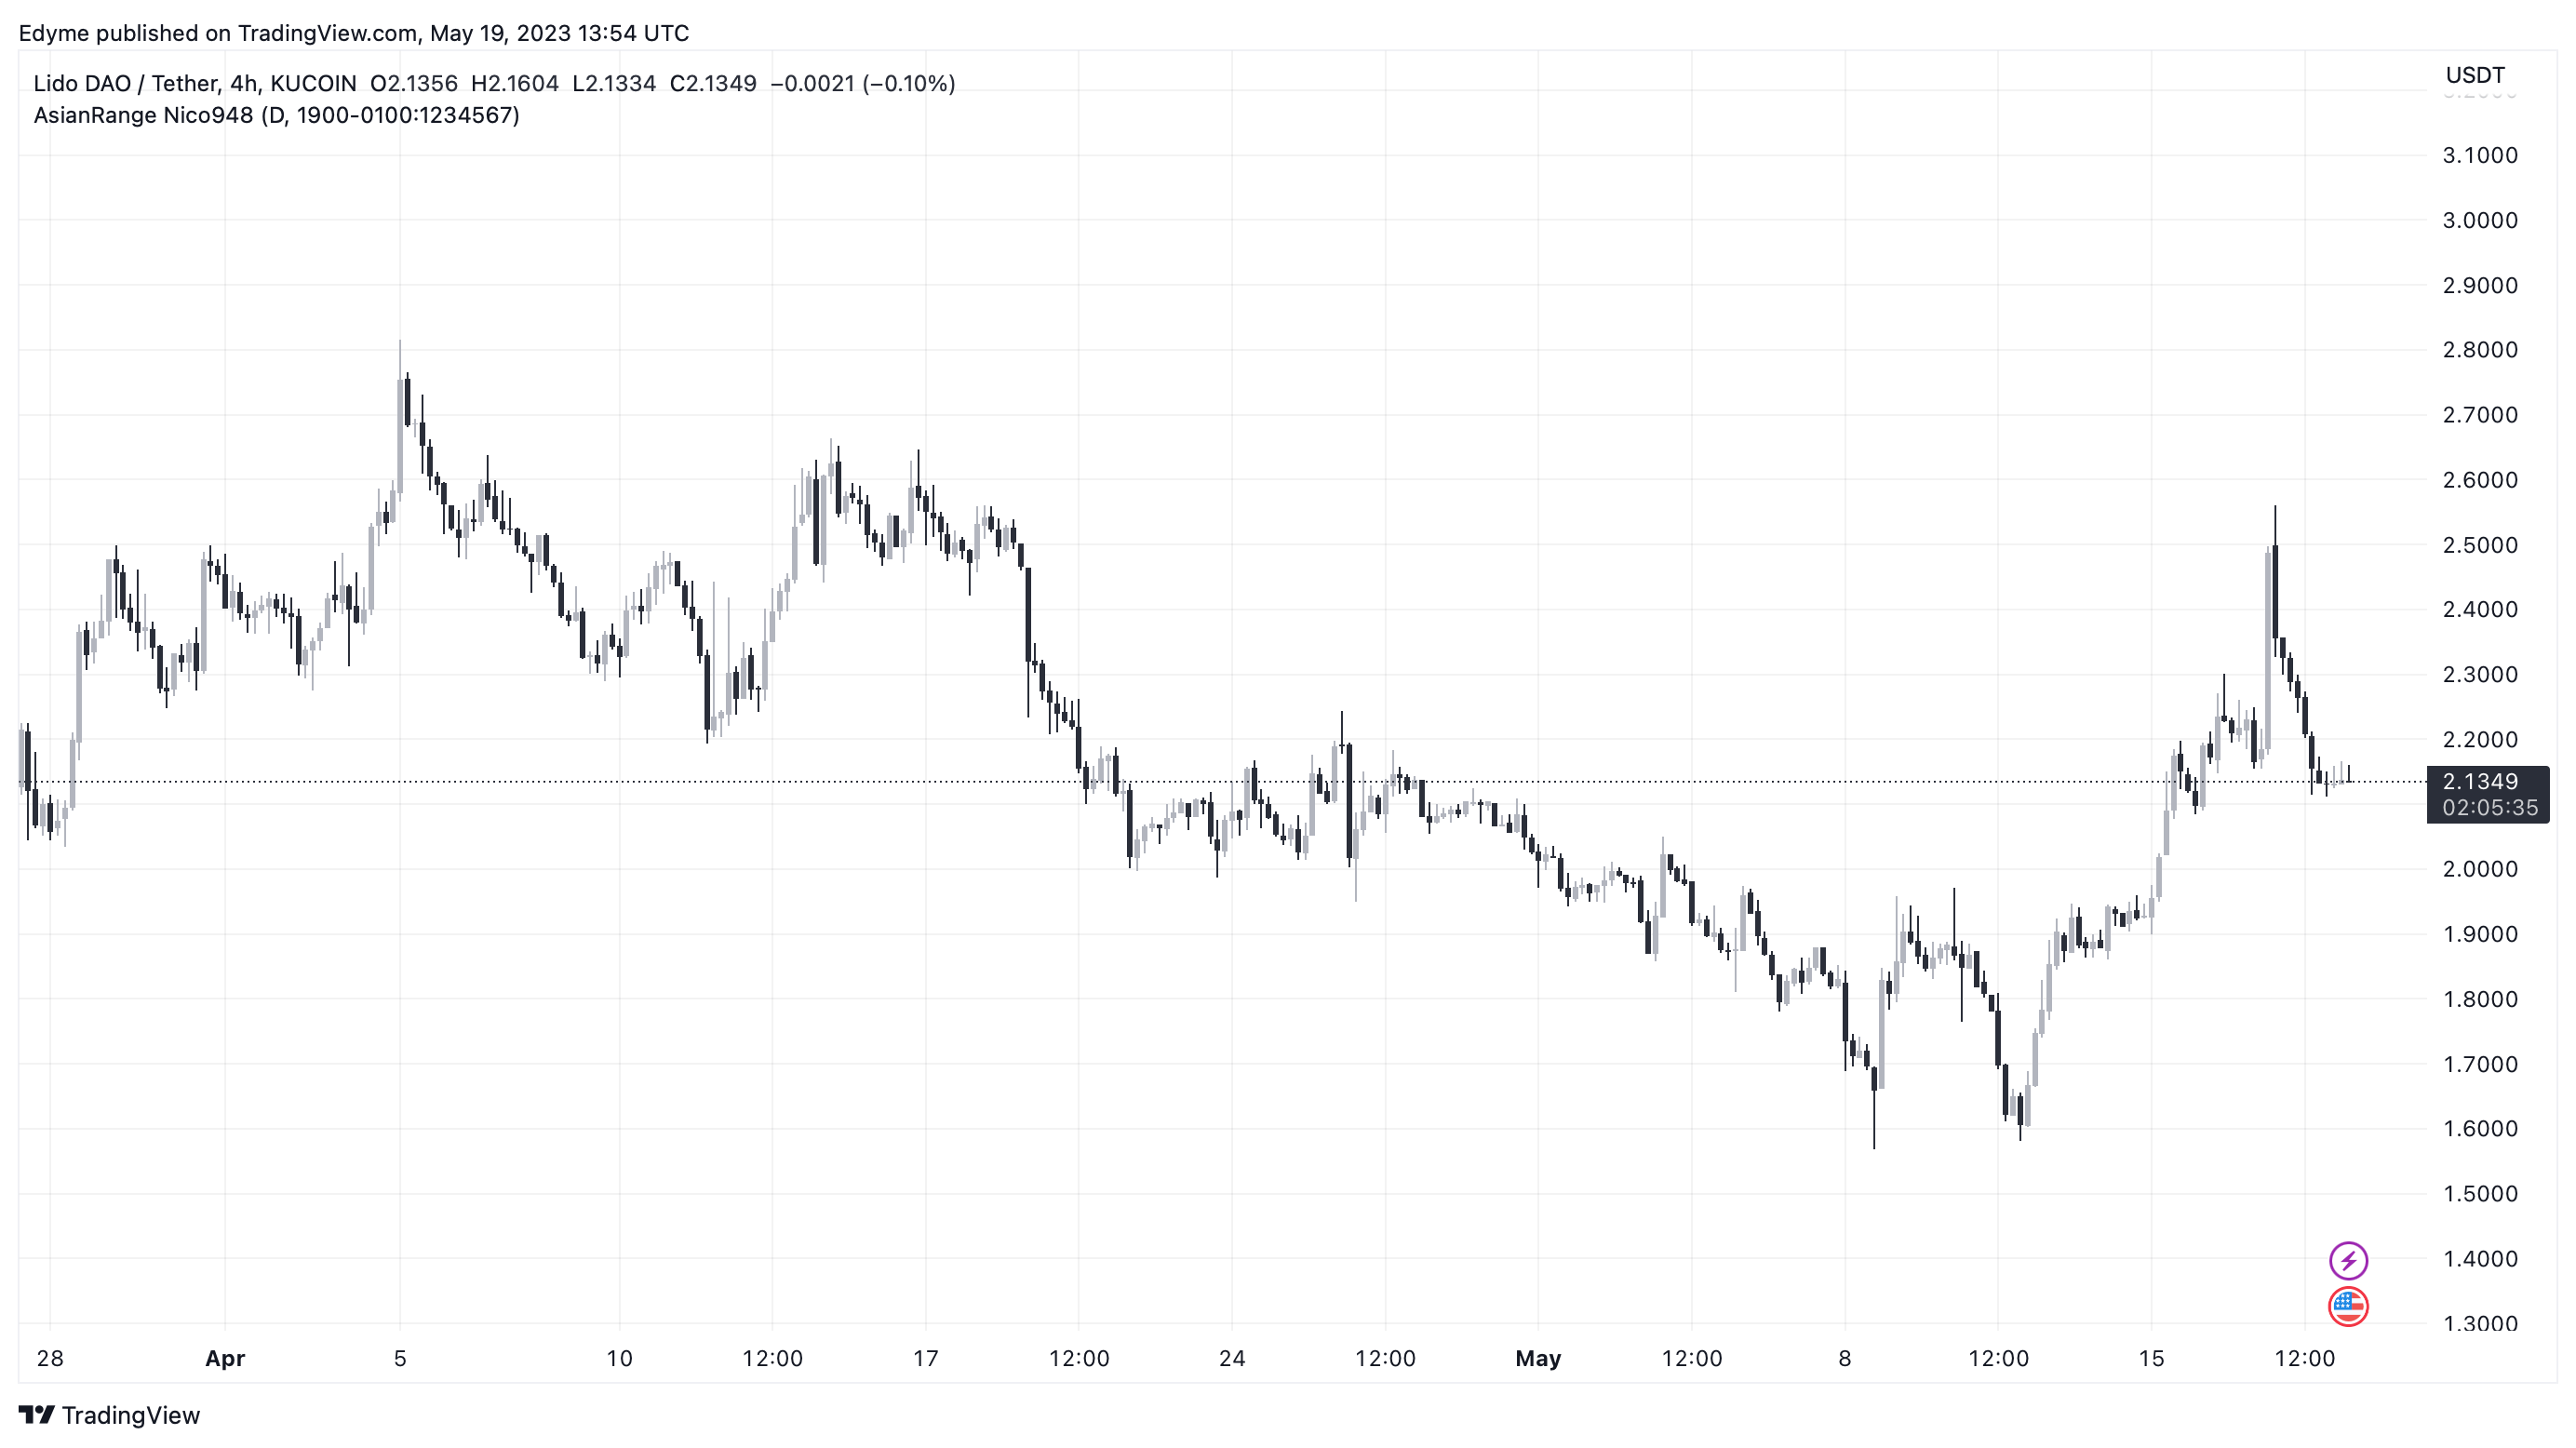 График цен Lido DAO (LDO) на TradingView